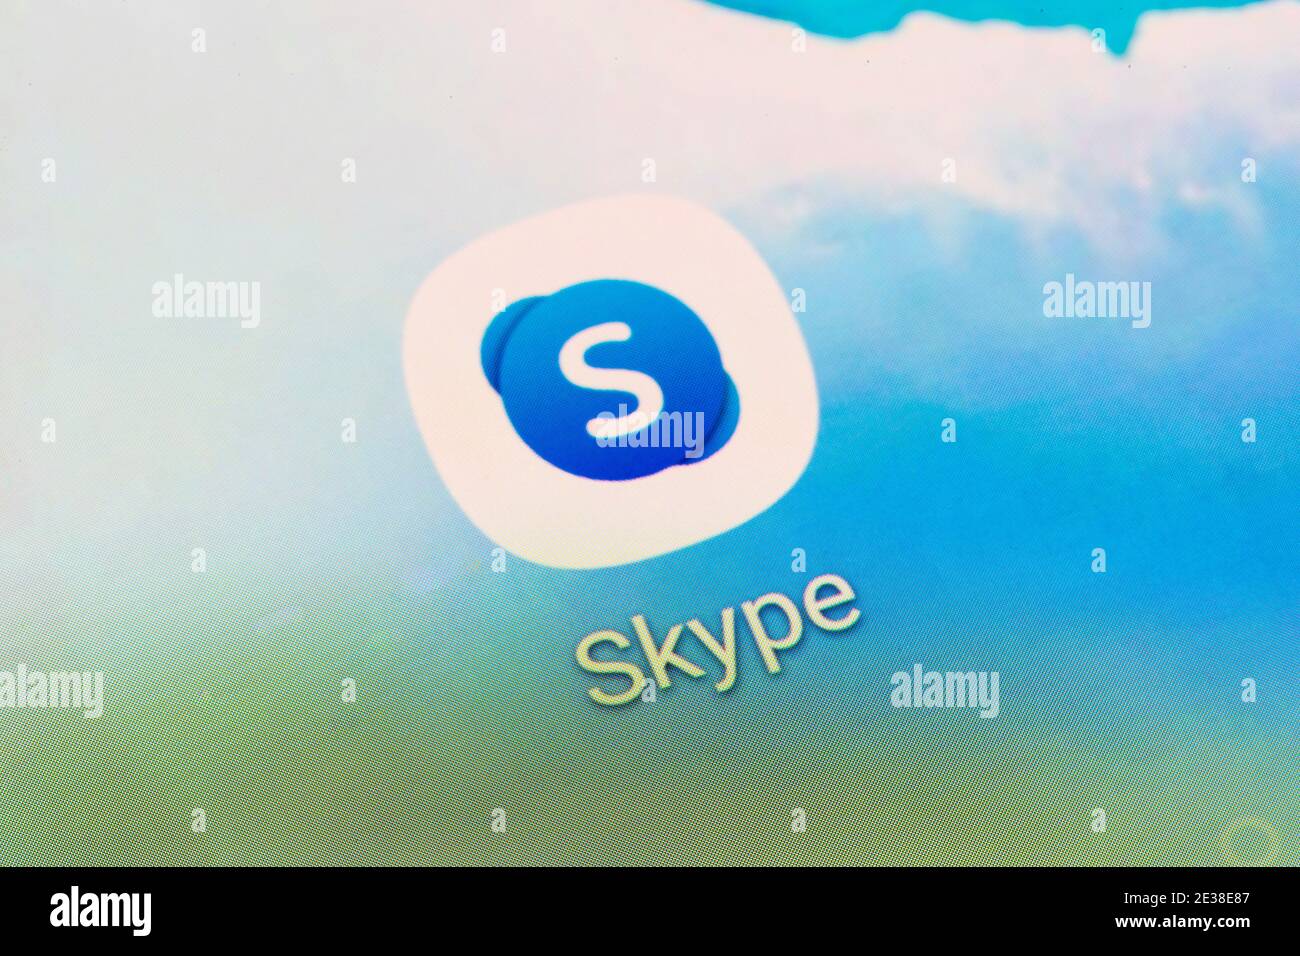 Eine Nahaufnahme des App-Logos für Skype - A Proprietäre Telekommunikationsanwendung, die auf die Bereitstellung von Video-Chat und spezialisiert ist Sprachanrufe Stockfoto